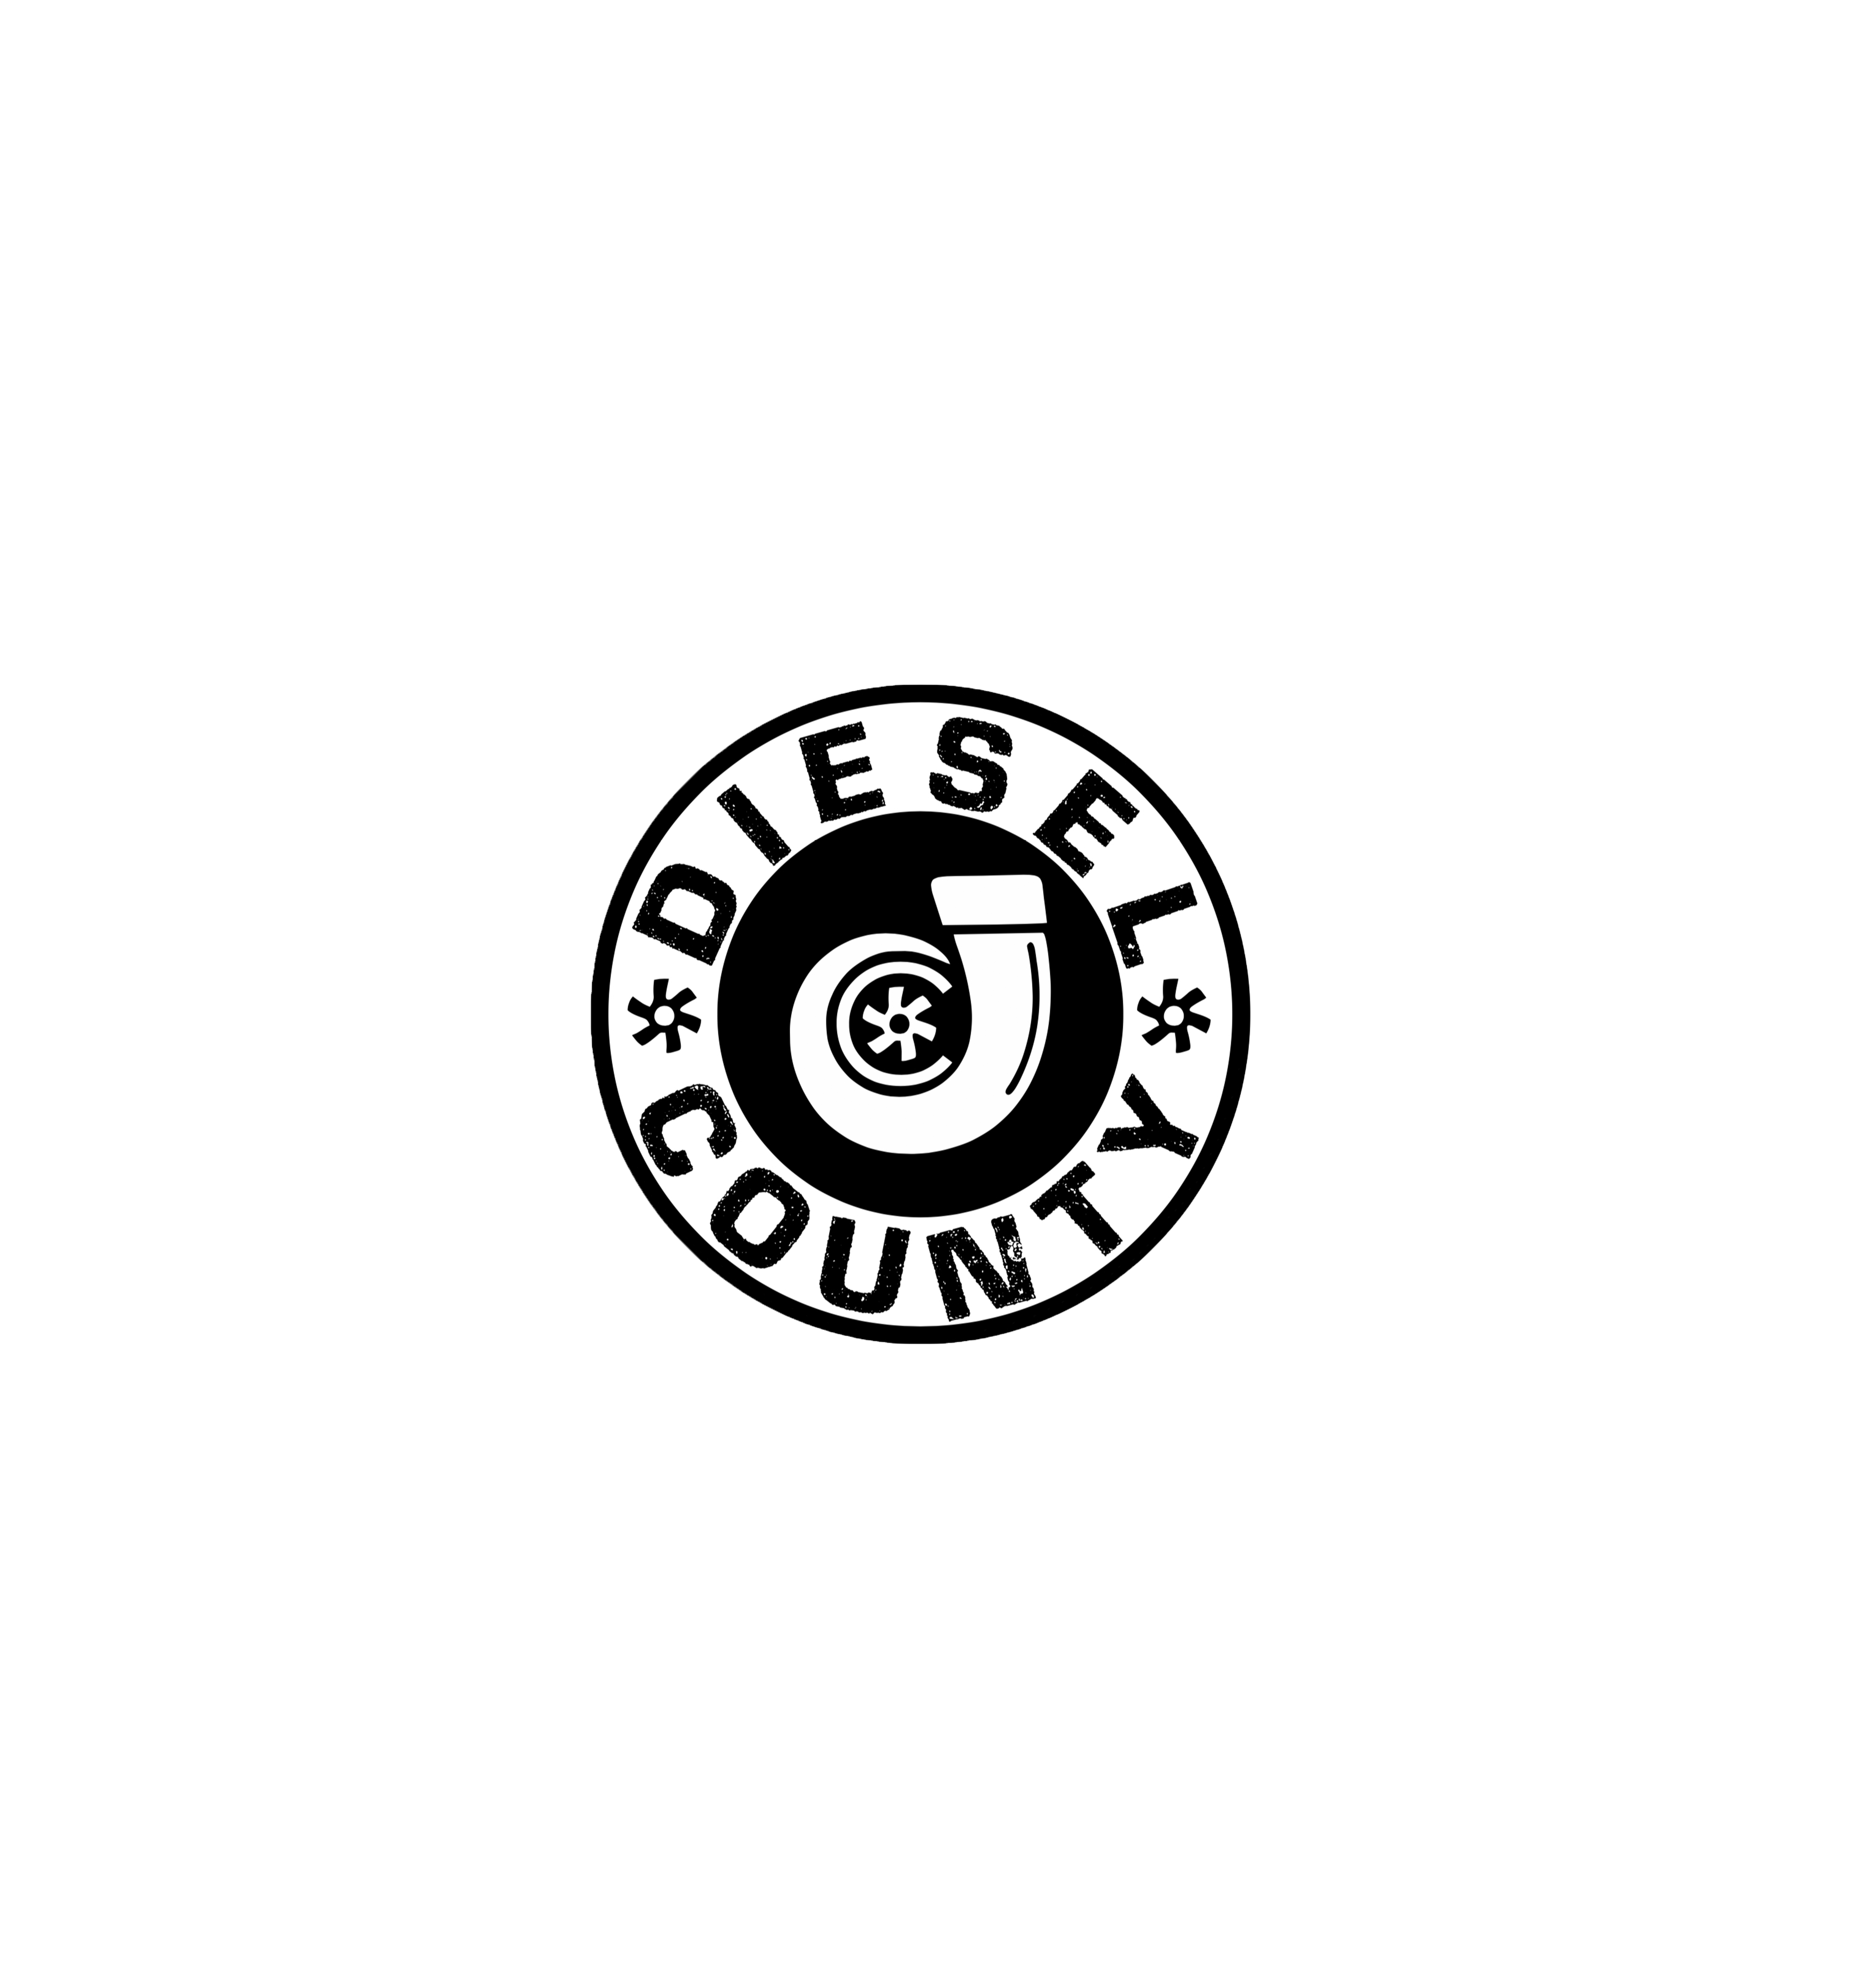 Diesel county